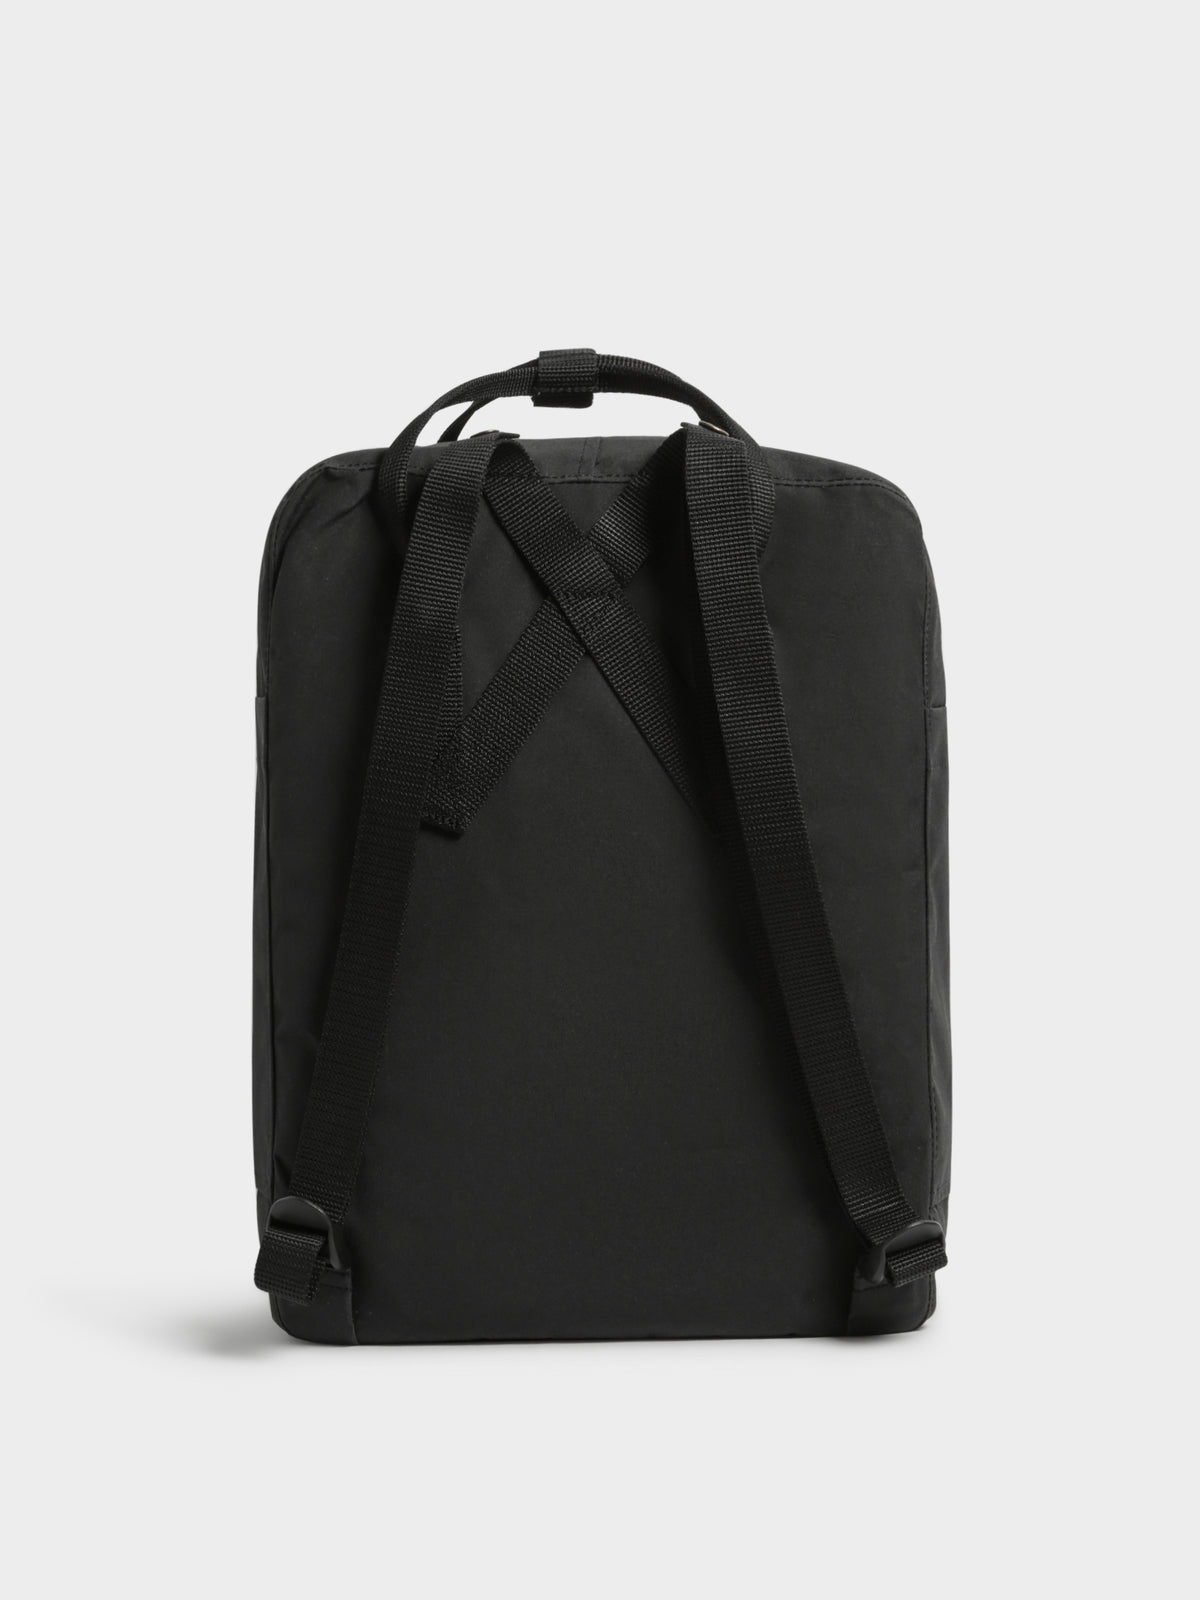 Kanken Backpack in Black Zen